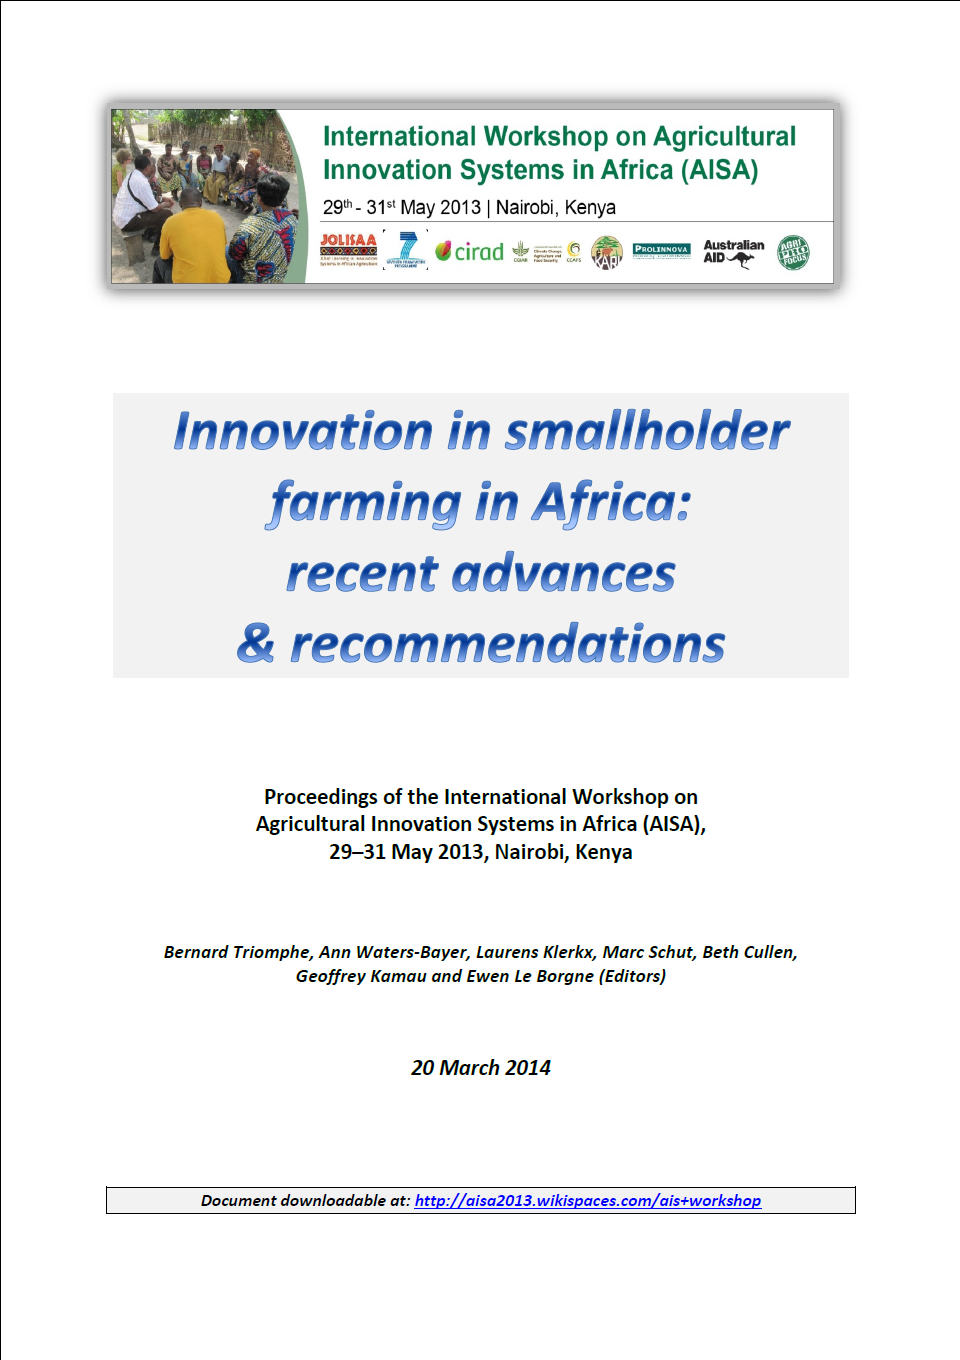 AISA innovation in smallholder farming